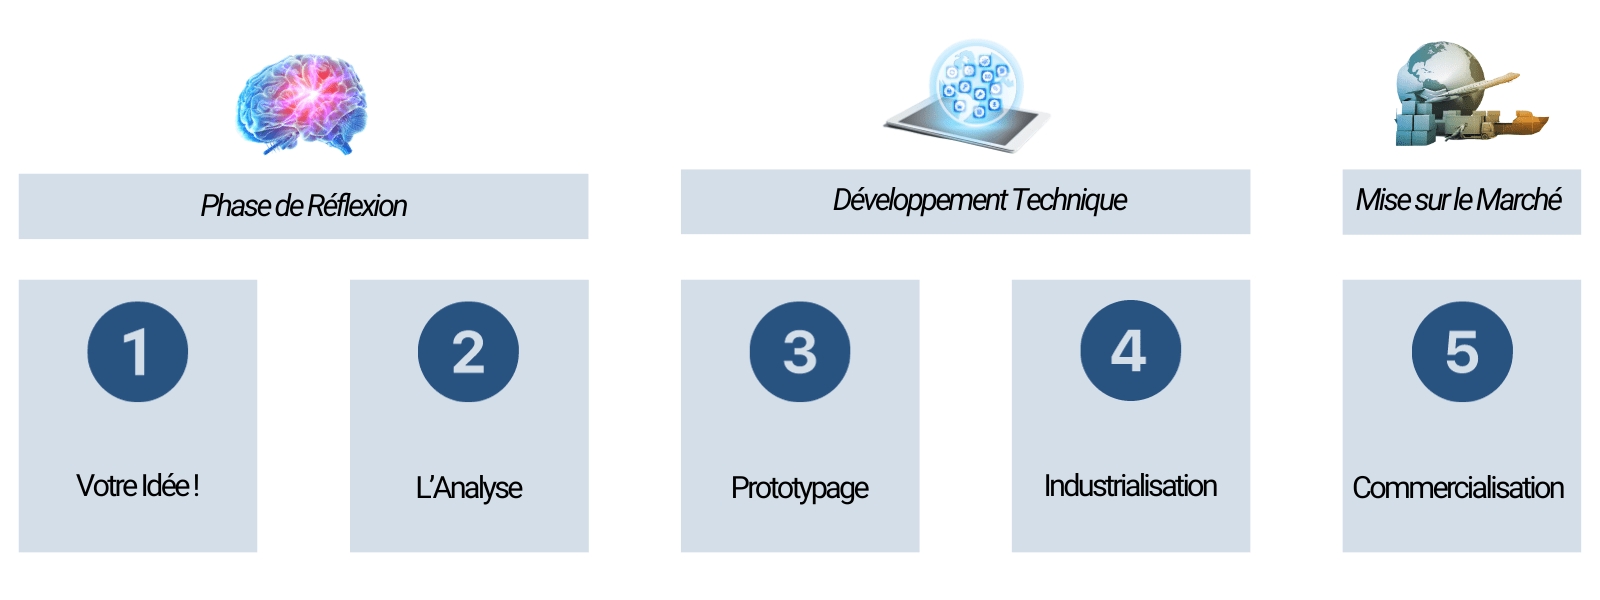 Image illustrant les différentes phases de gestion de projet pour des projets IoT/objets connectés, de la conception à la mise en œuvre.